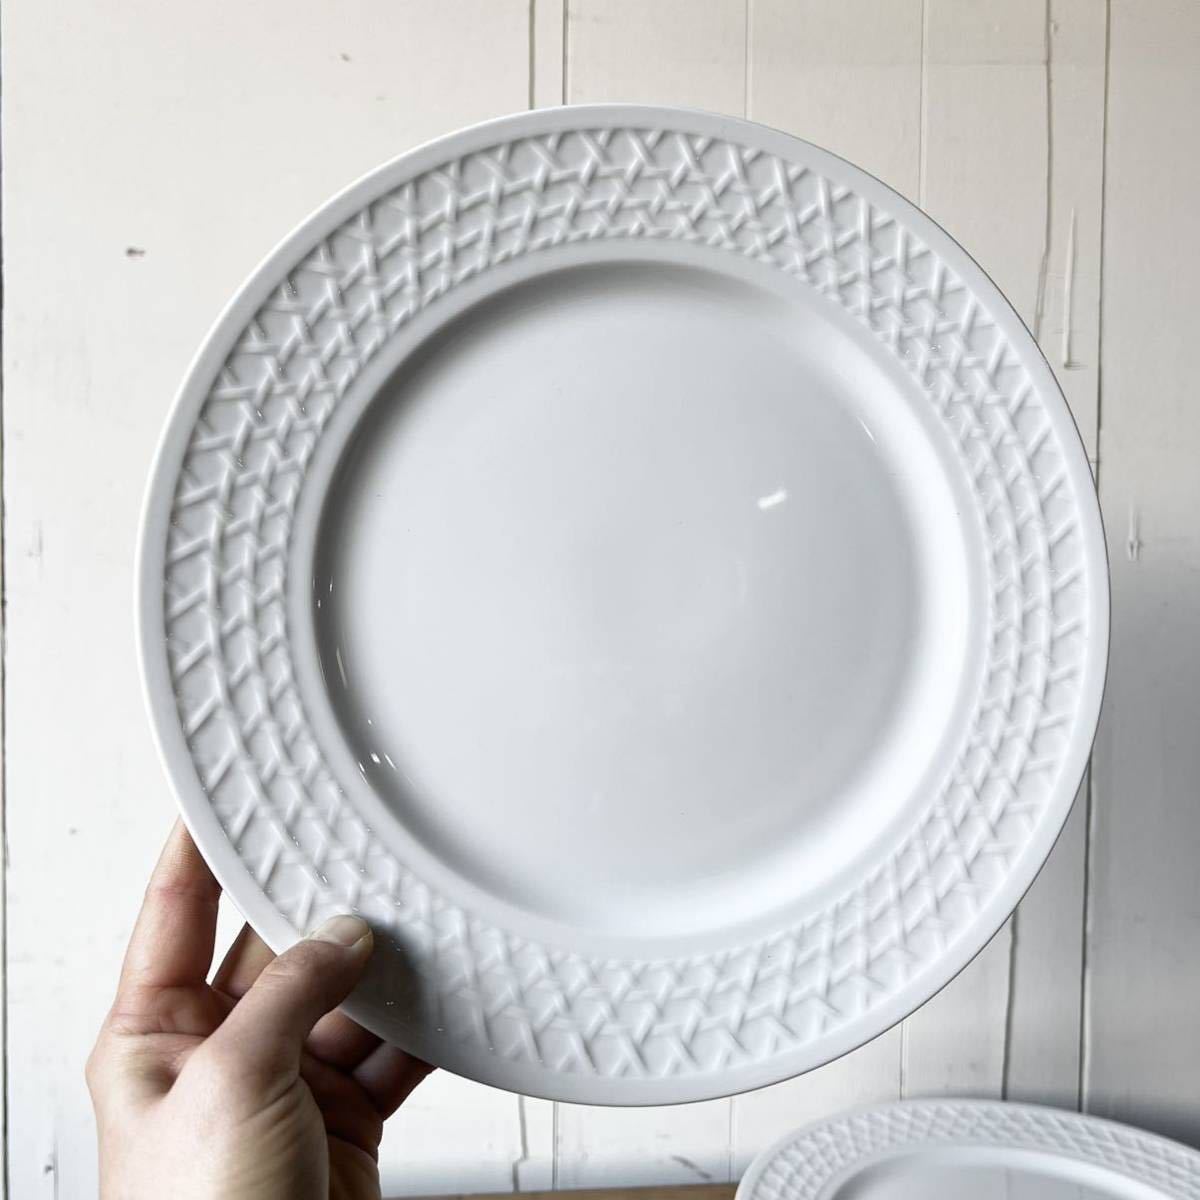 2枚set 網目柄リムプレート 径26.5cm 白磁 デッドストック 陶器 検: メインプレート デザート 業務用 レストラン レトロ ビンテージの画像1